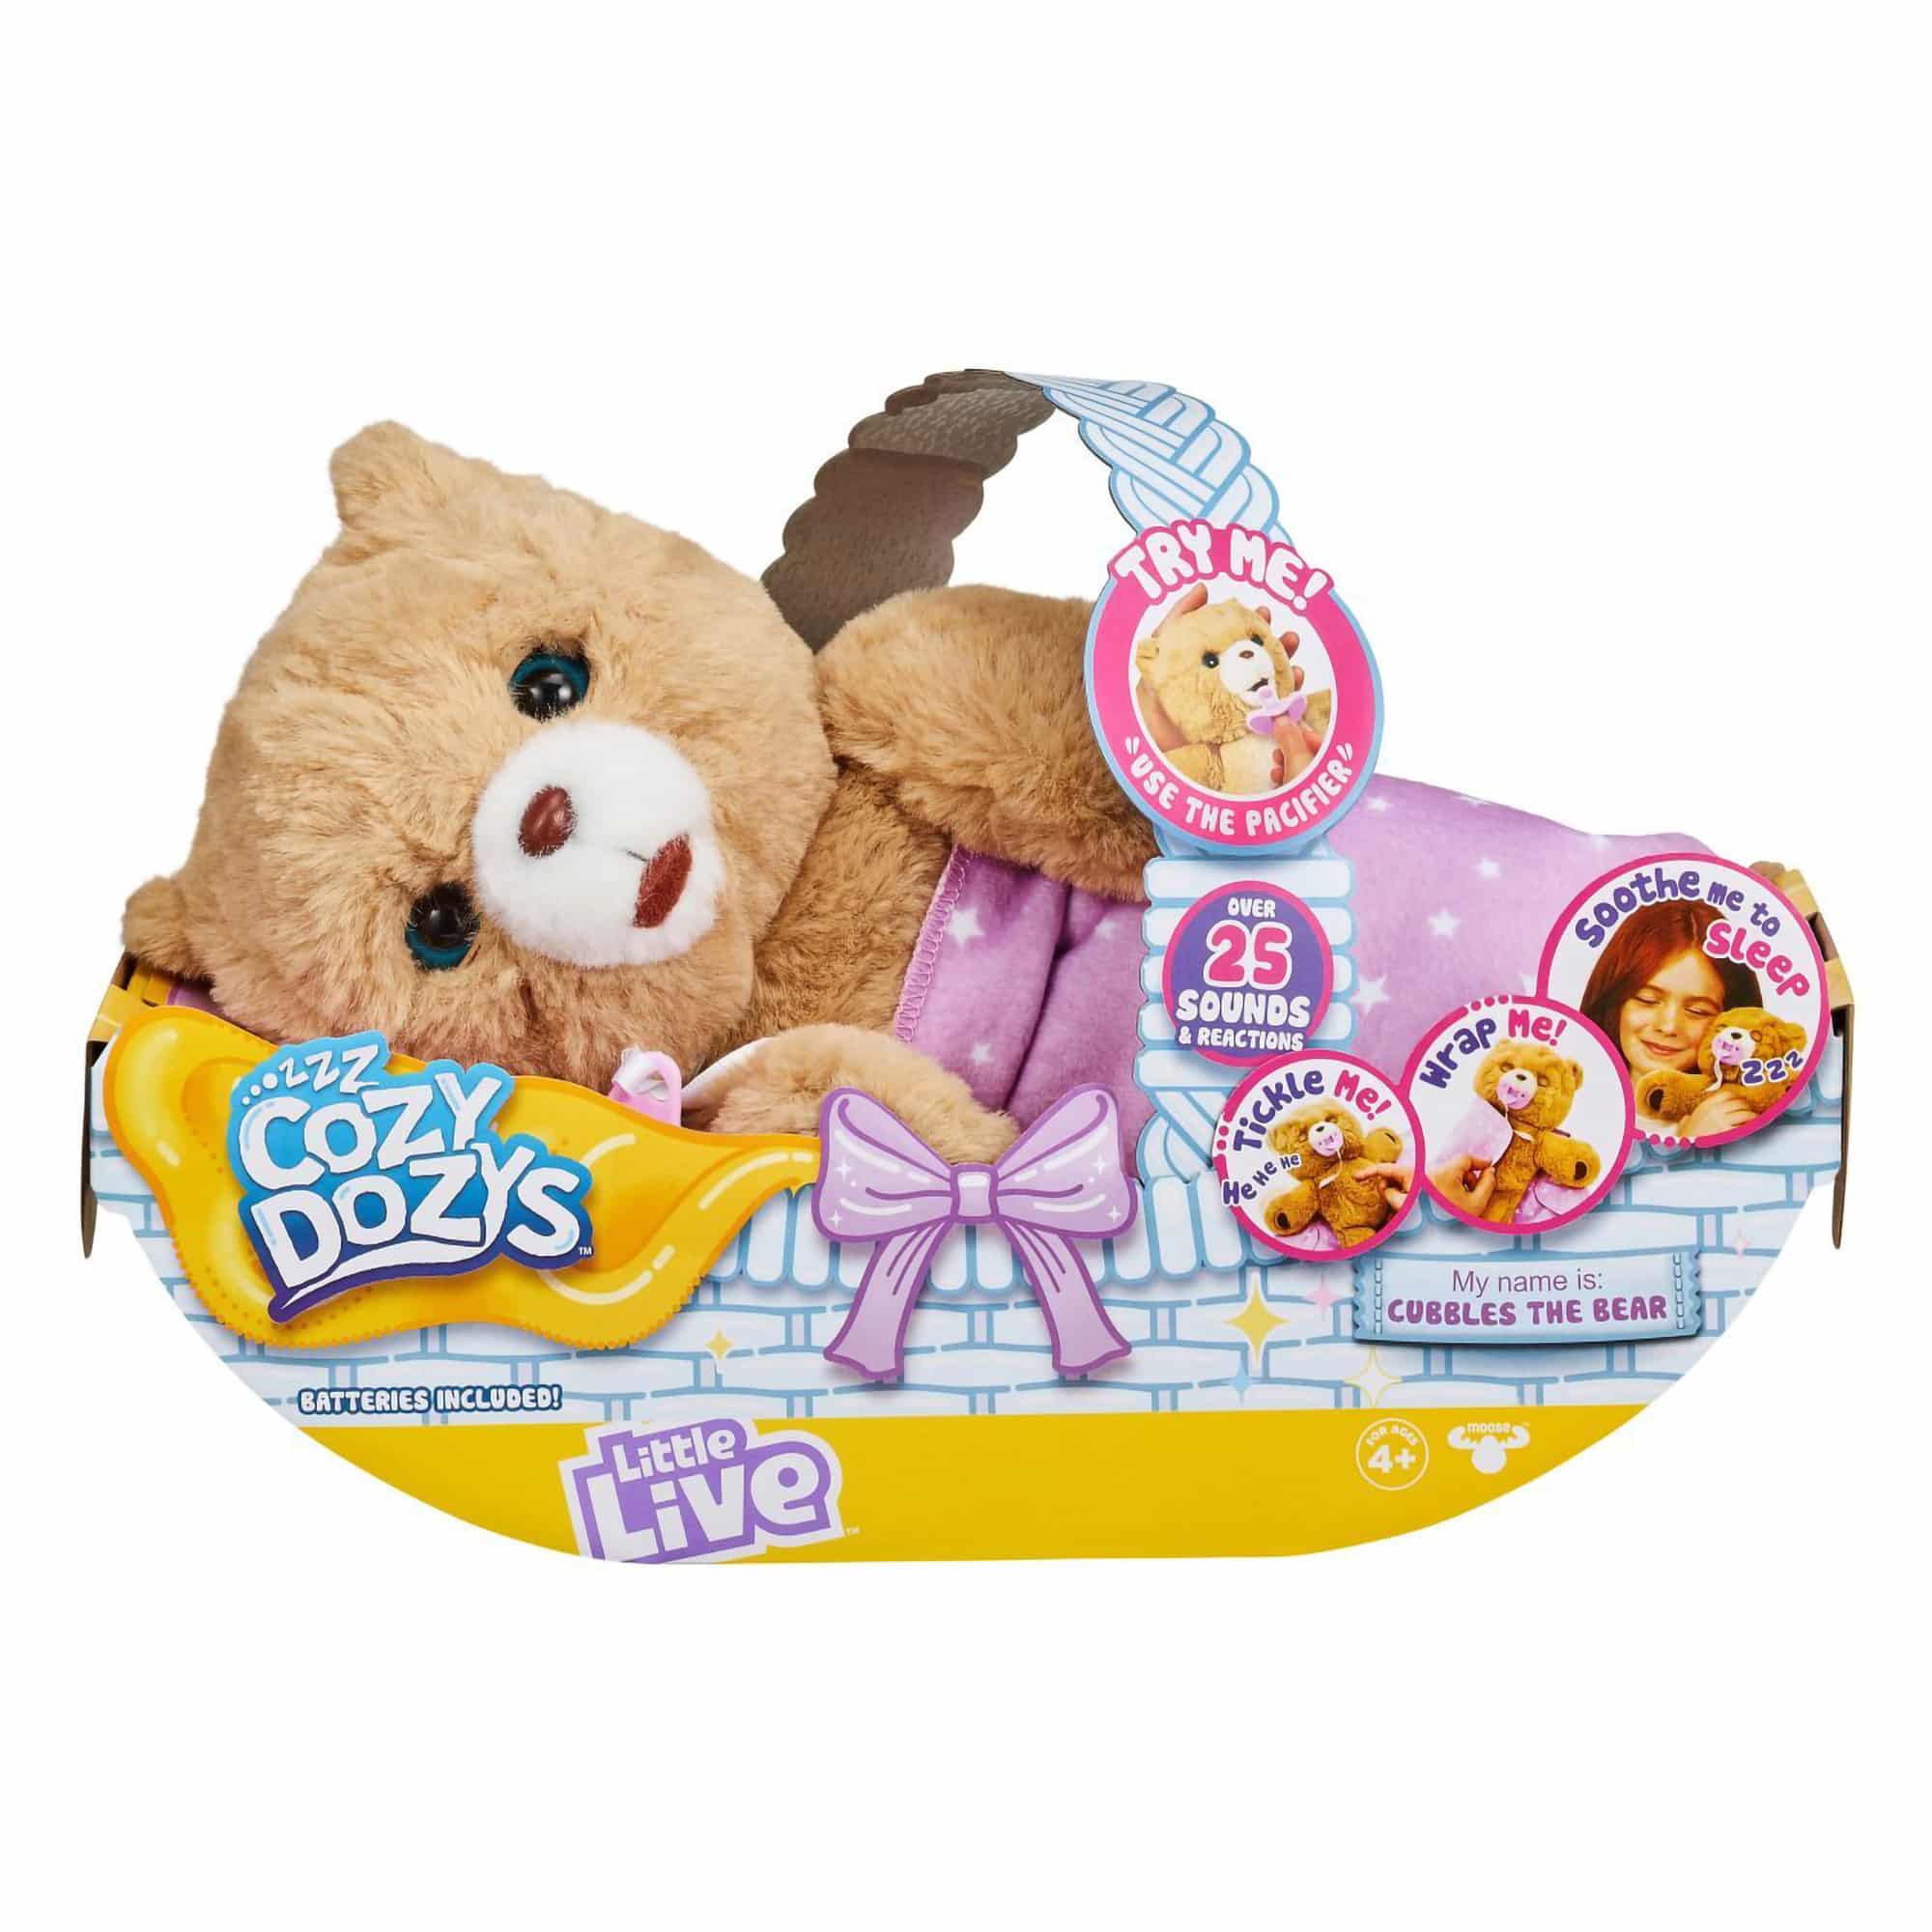 Little Live Pets - Cozy Dozys - Cubbles The Bear